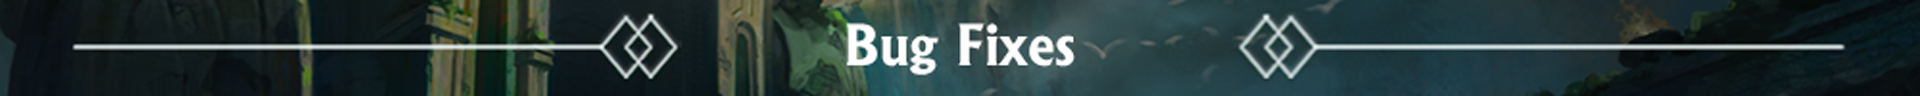 Subheading titled bug fixes